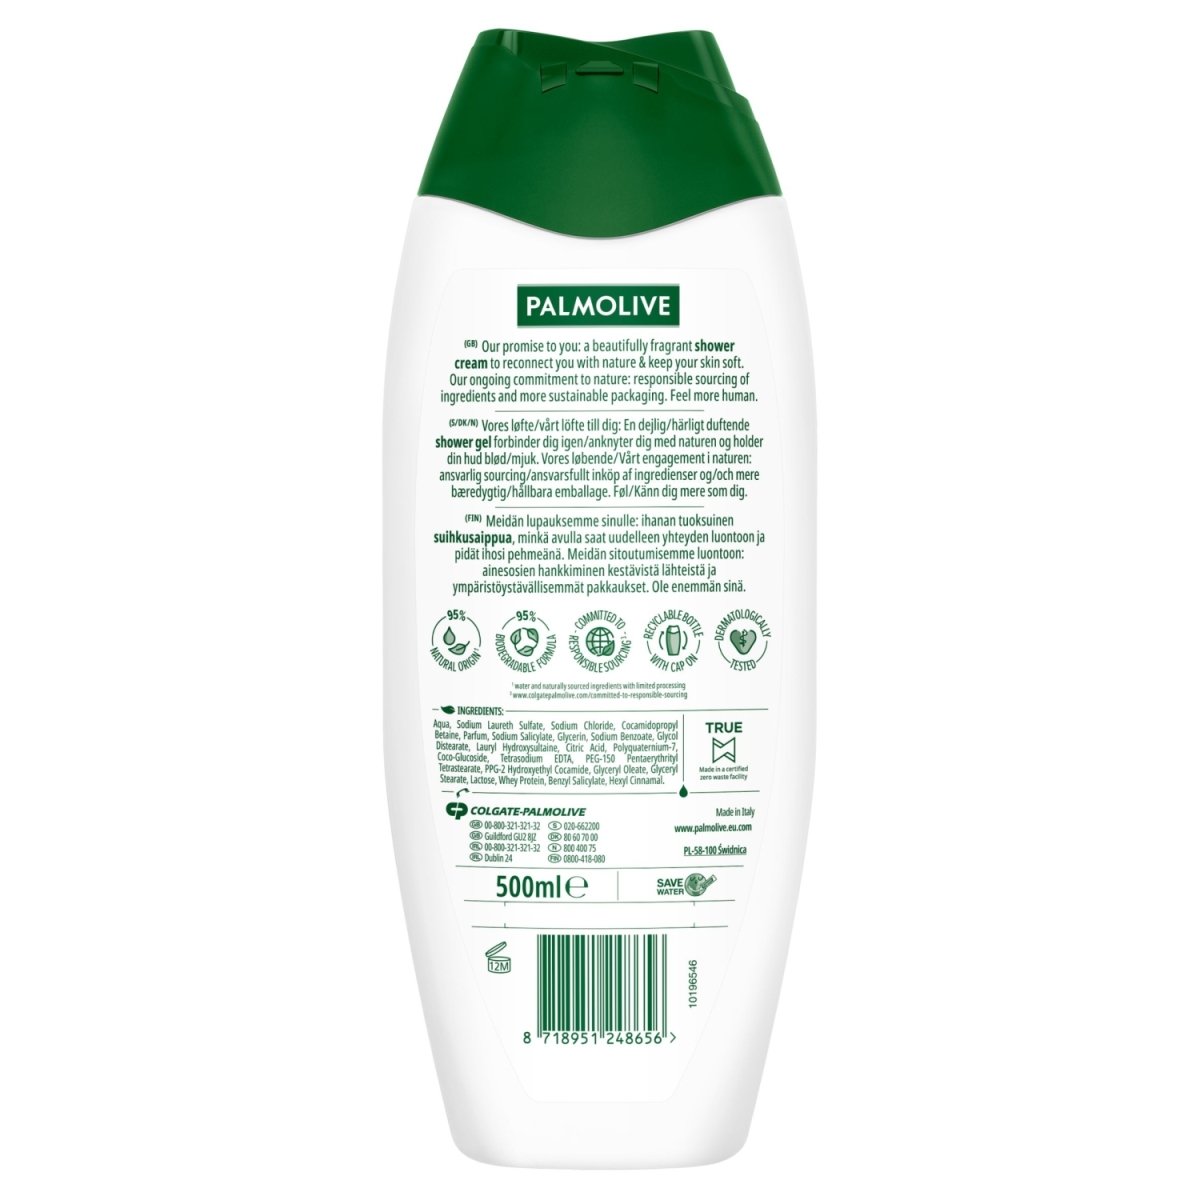 Palmolive Shower Milk - Intamarque 8718951248656